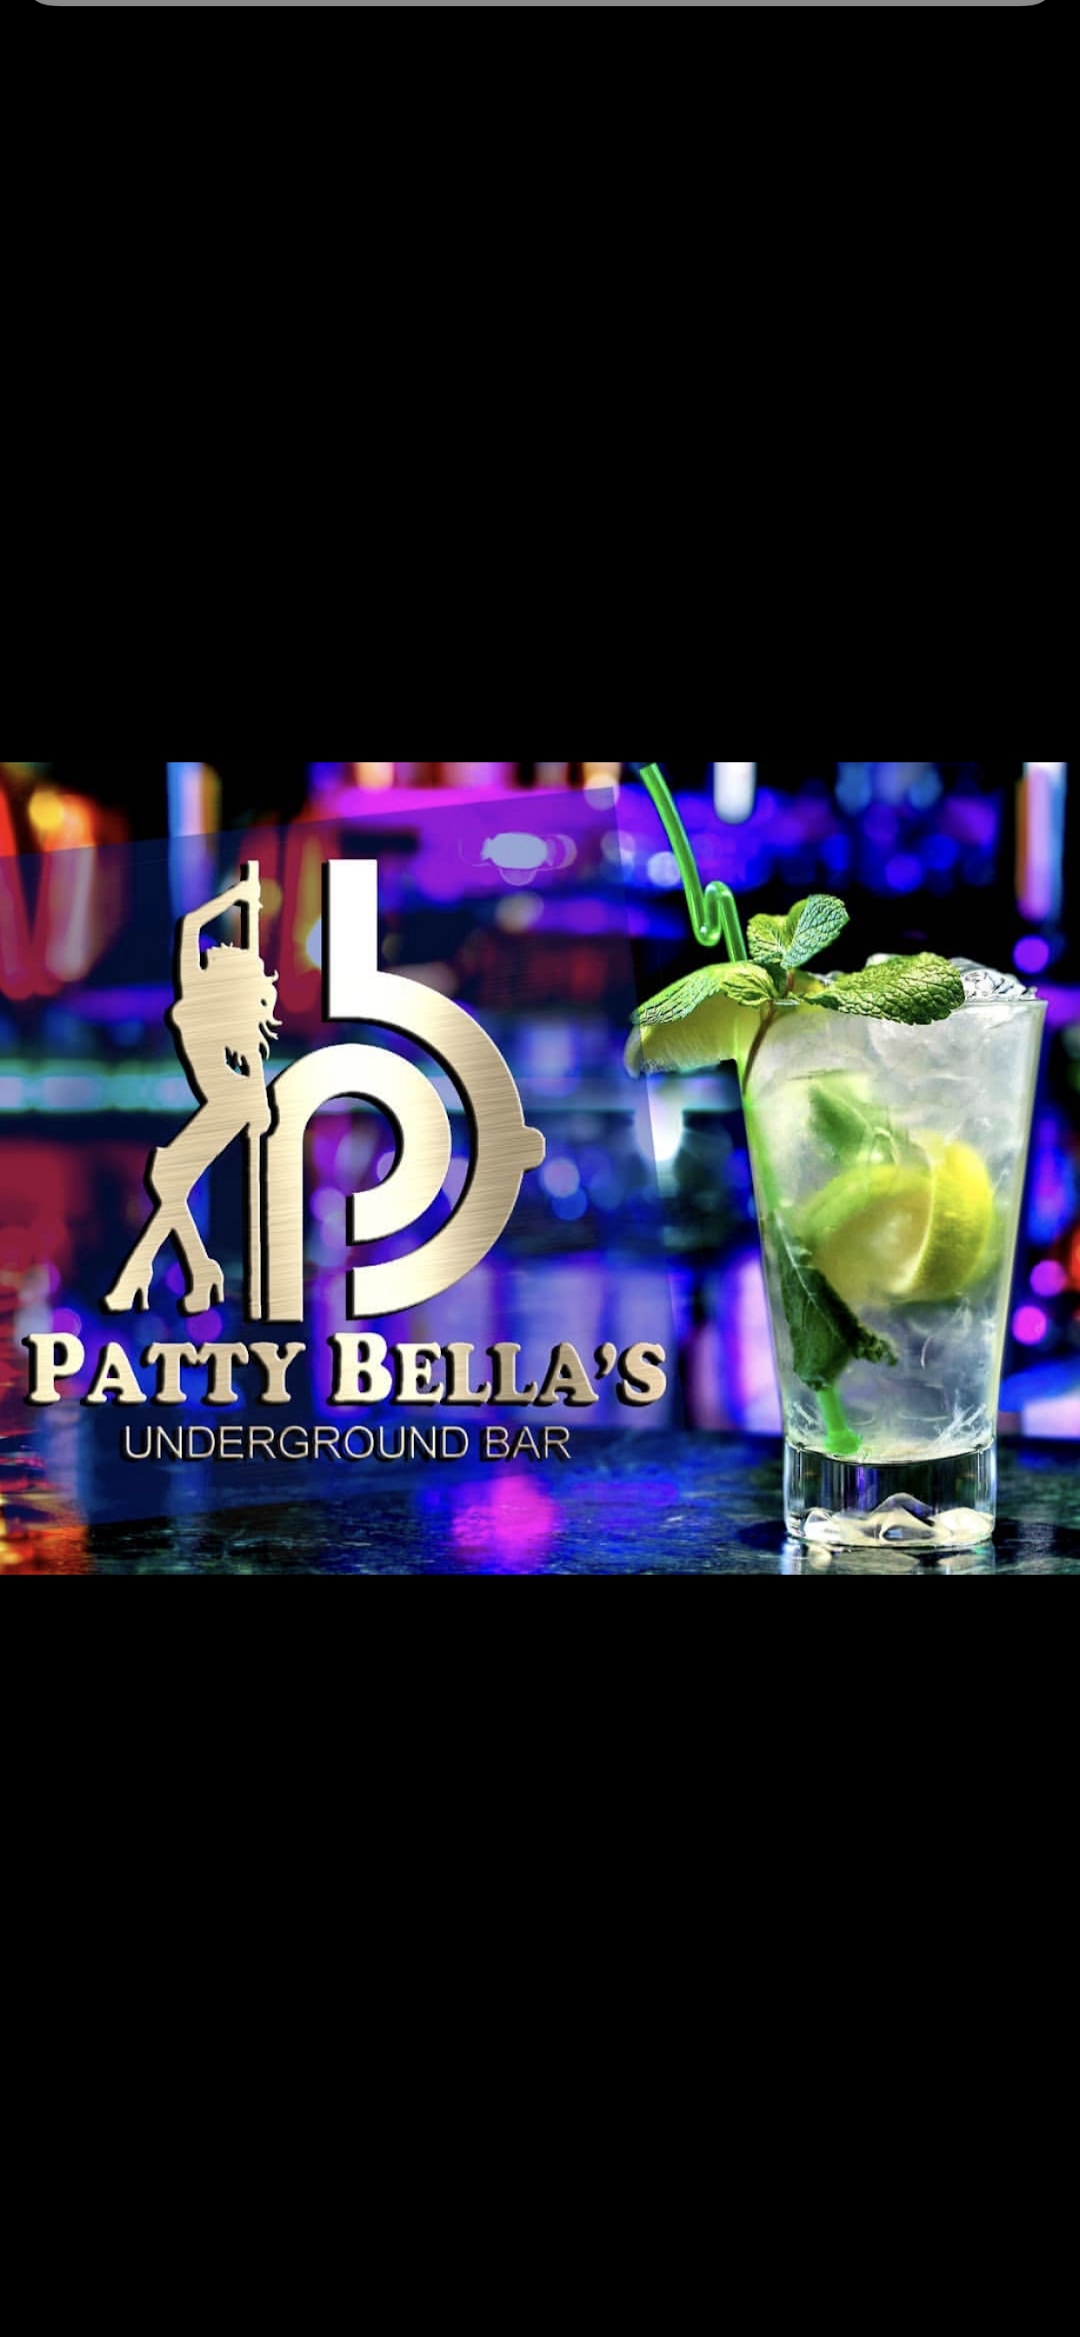 Patty Bella Underground Bar